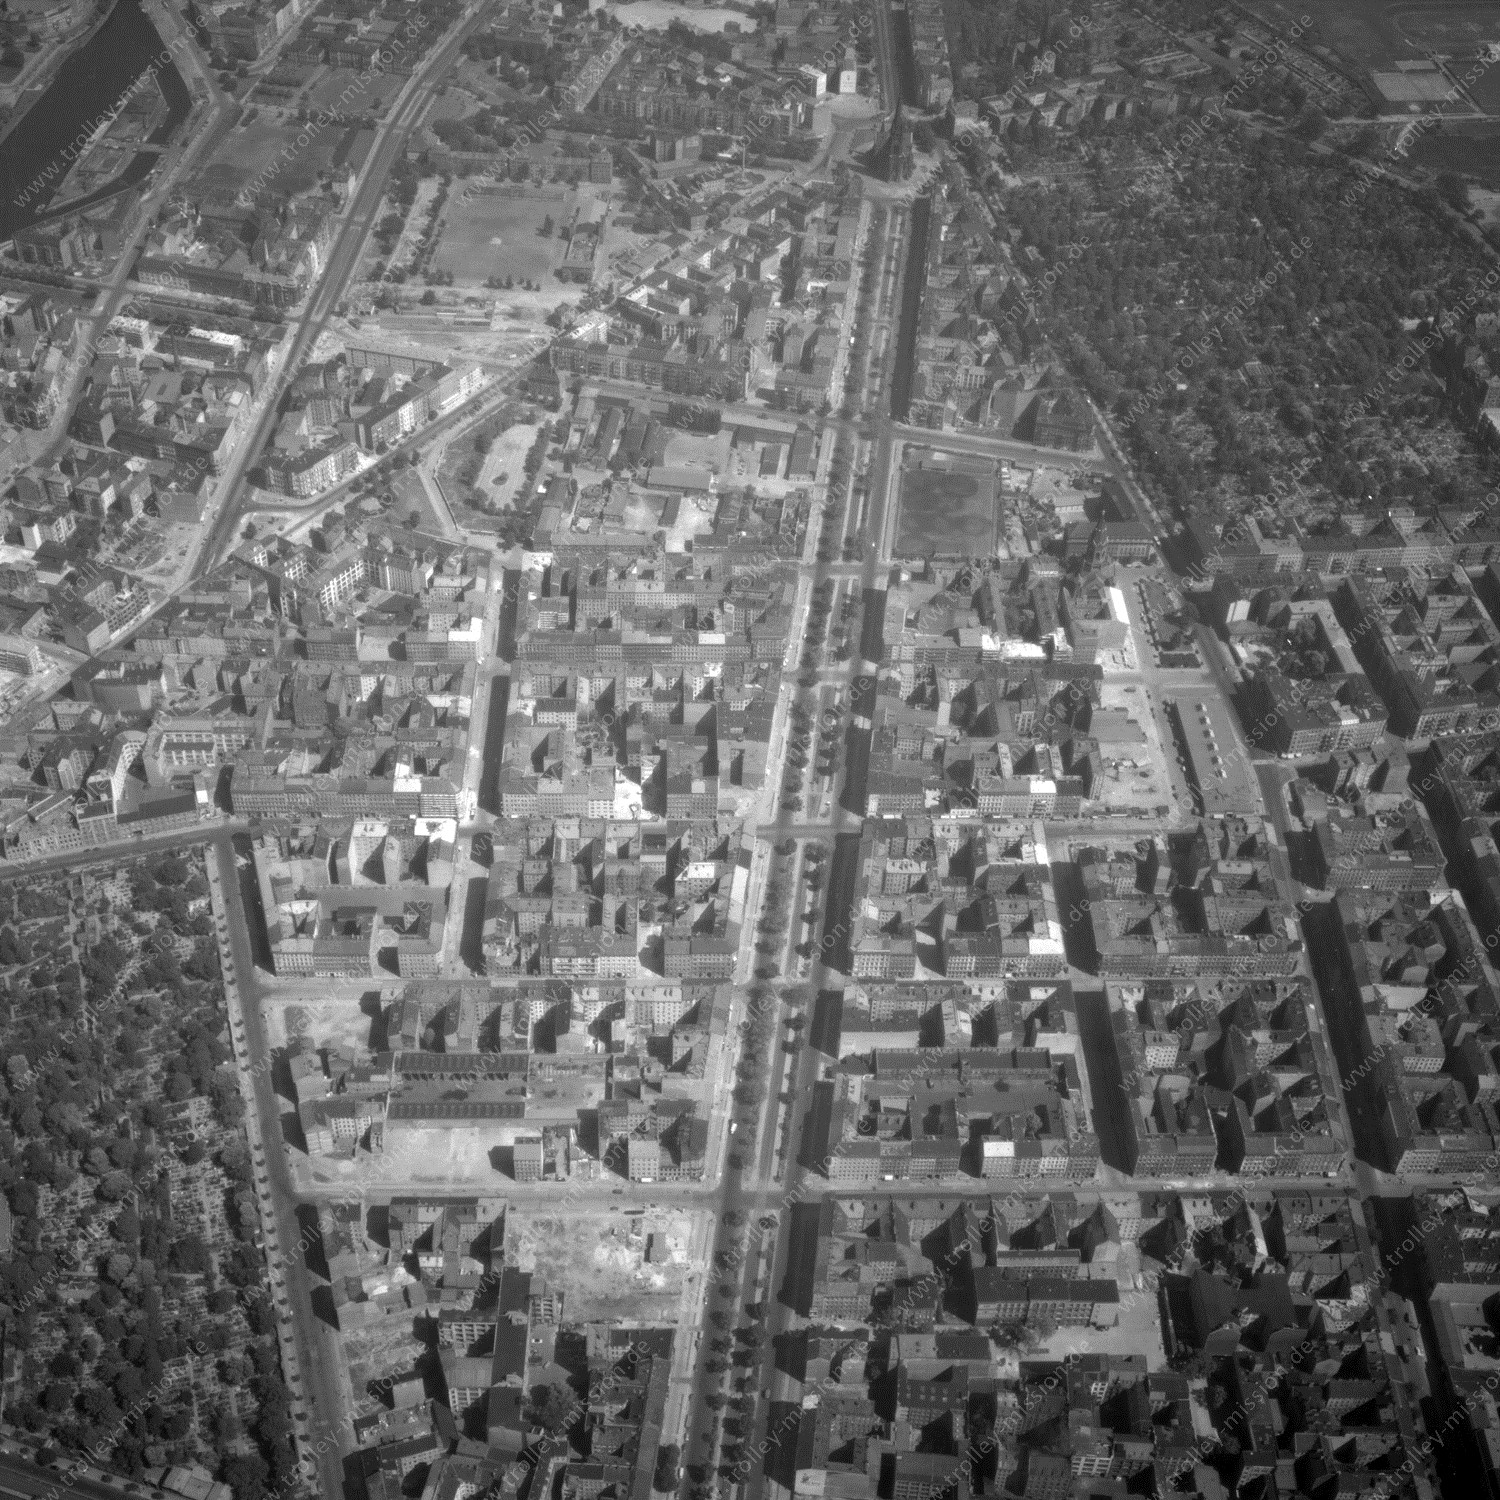 Alte Fotos und Luftbilder von Berlin - Luftbildaufnahme Nr. 04 - Historische Luftaufnahmen von West-Berlin aus dem Jahr 1954 - Flugstrecke Juliett